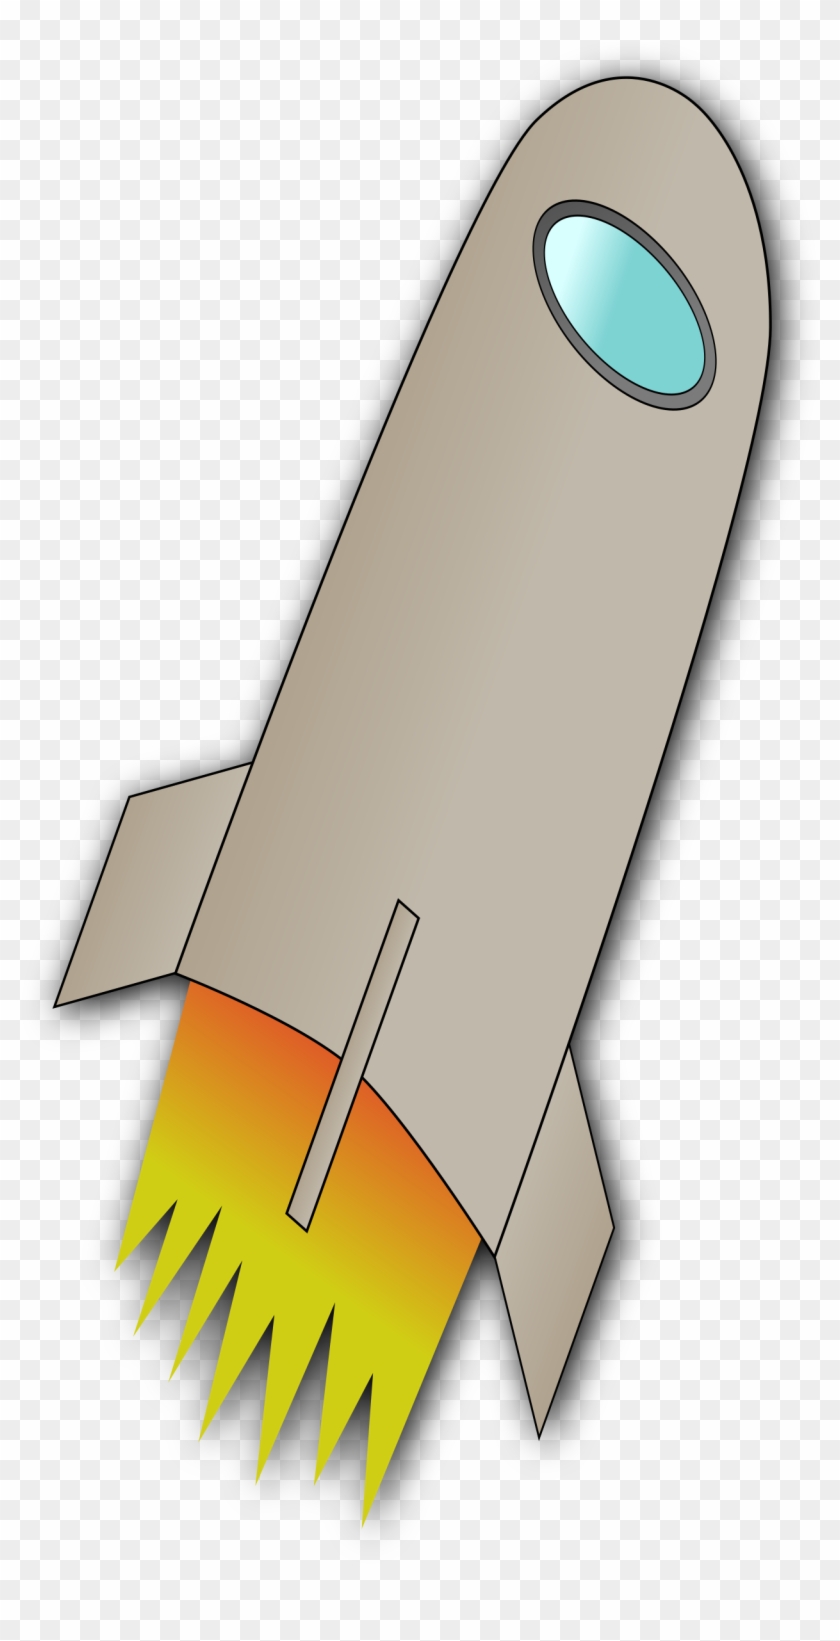 Space Rocket Whit Fire Clipart - ยาน อวกาศ แบ ล็ ค กราว น์ สี ดำ #1104695